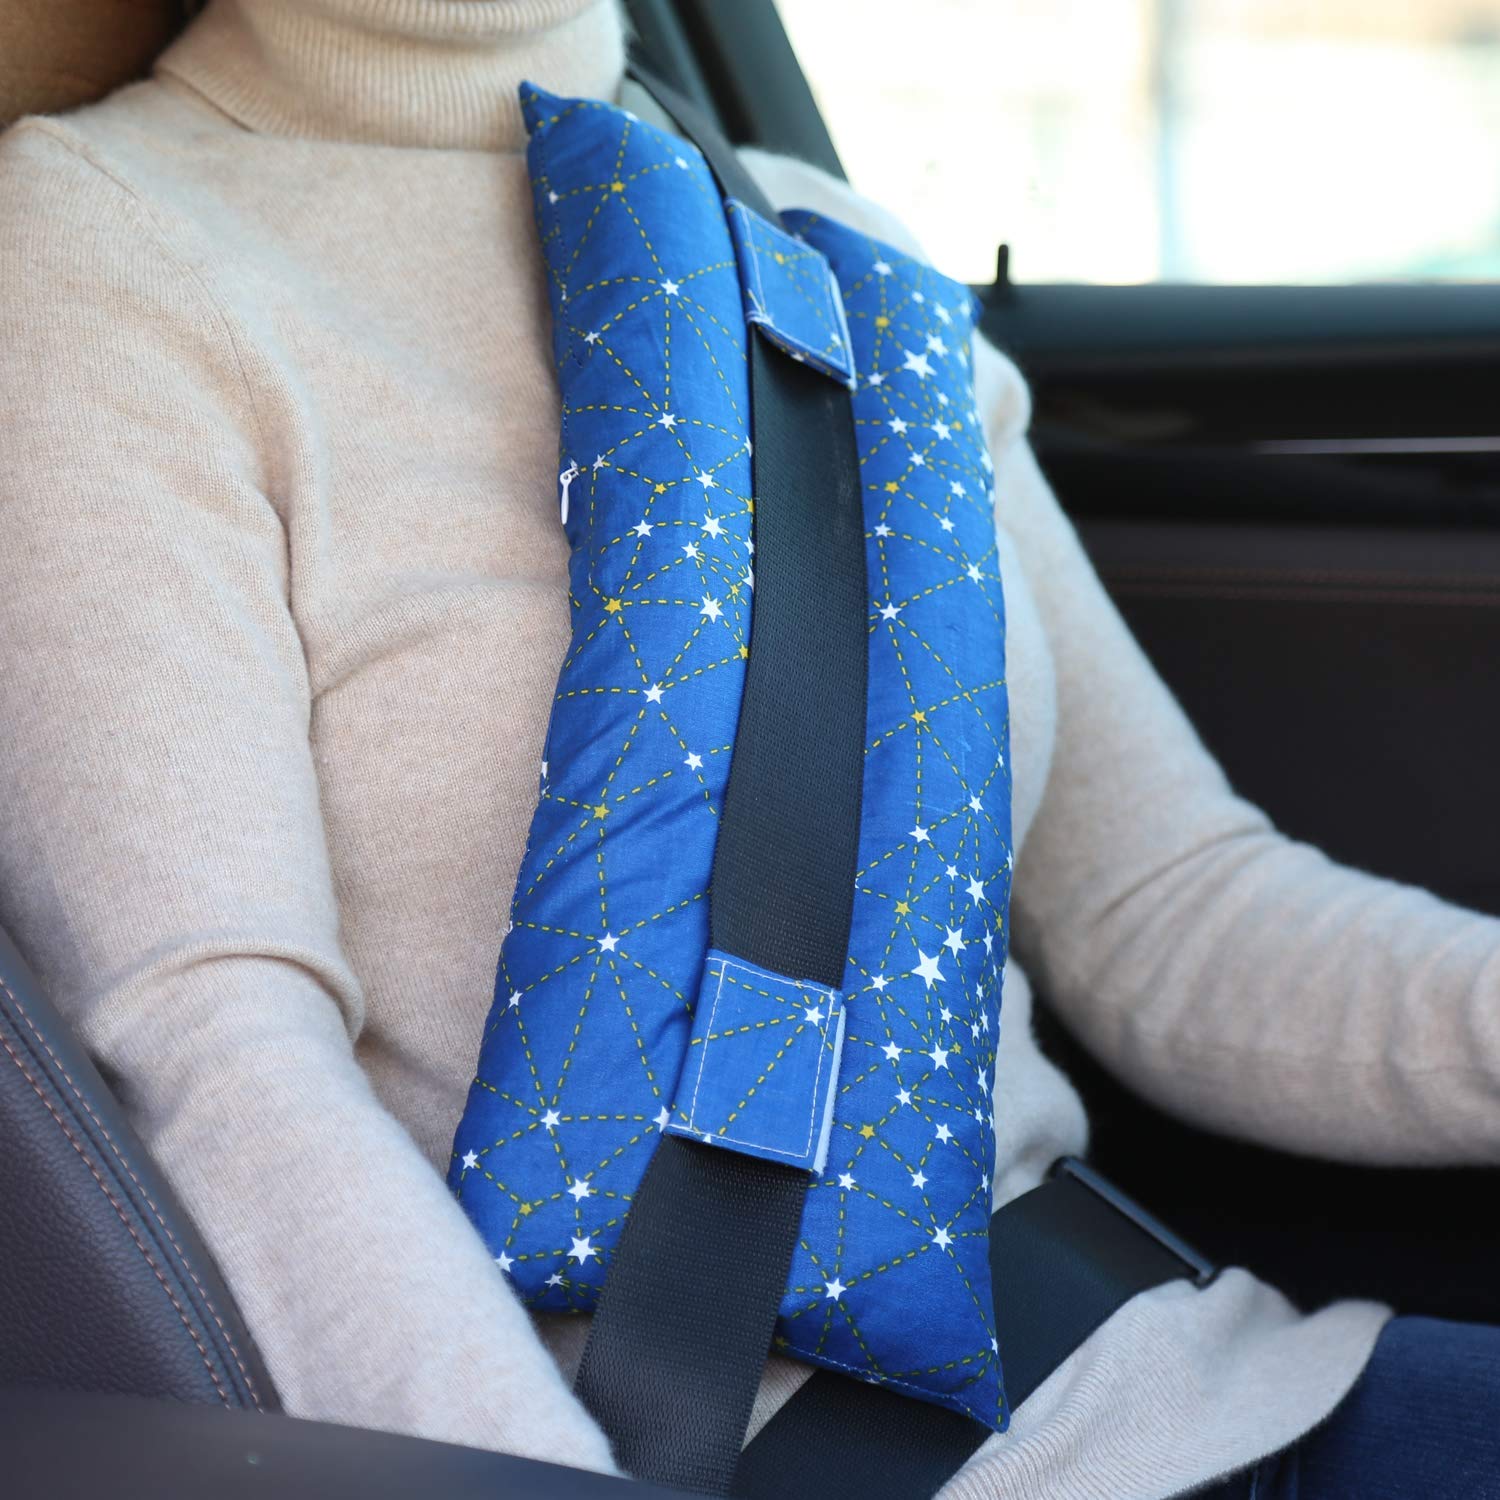 Travel - Seat Belt Support Pillow